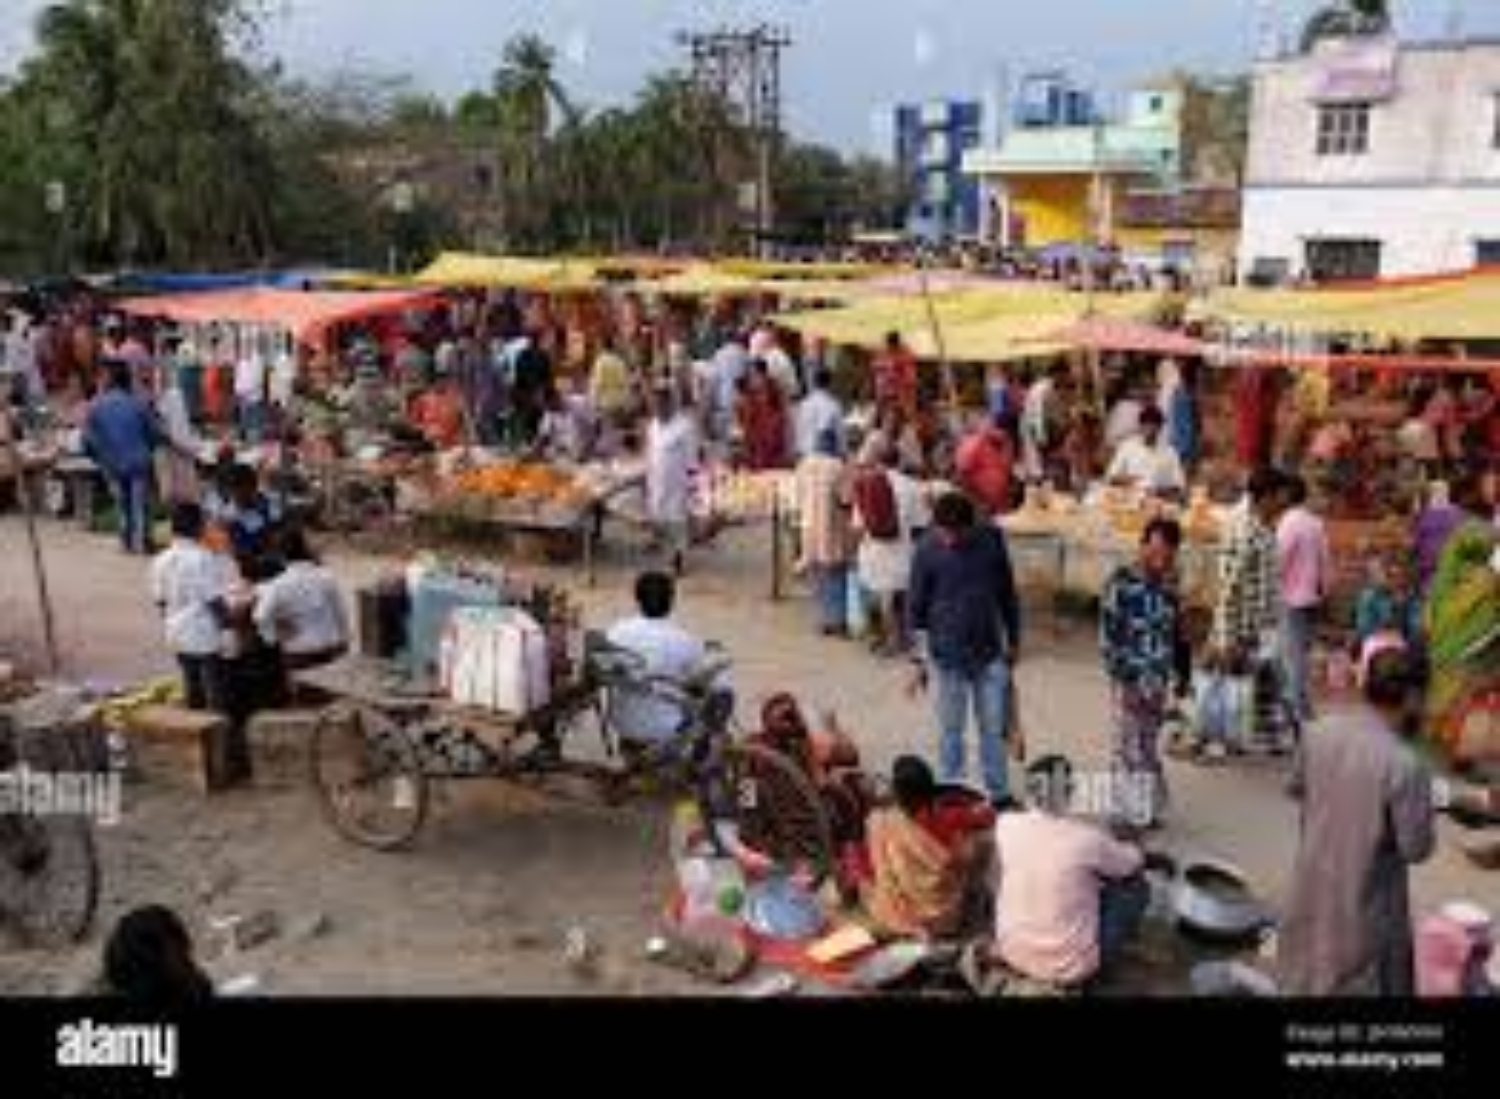  10 हजार की आबादी वाले गांवों में लगेंगे पंचायत बाजार